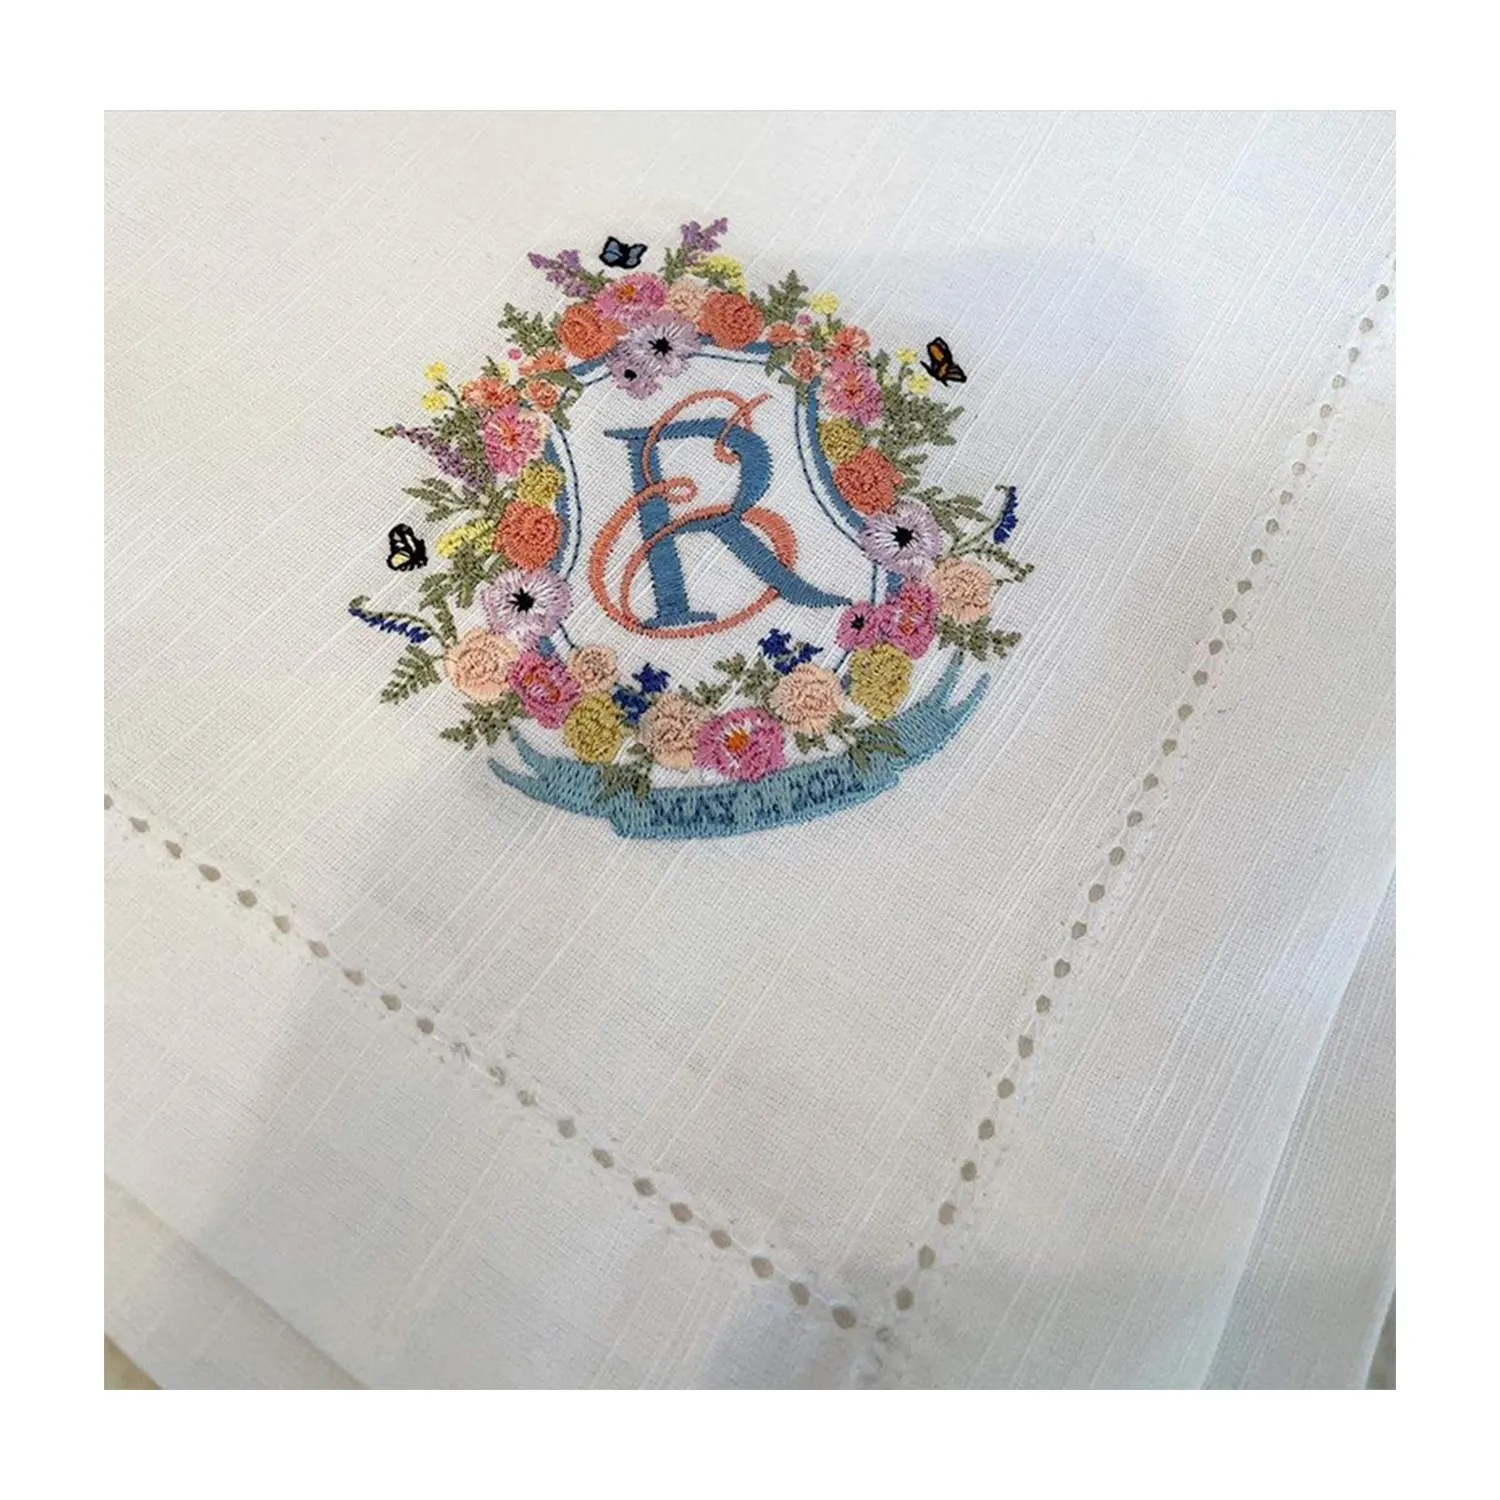 ナプキン刺繍リネンプリントディナーナプキンカスタム白いロゴ結婚式の布テーブルナプキン100% リネンナプキン